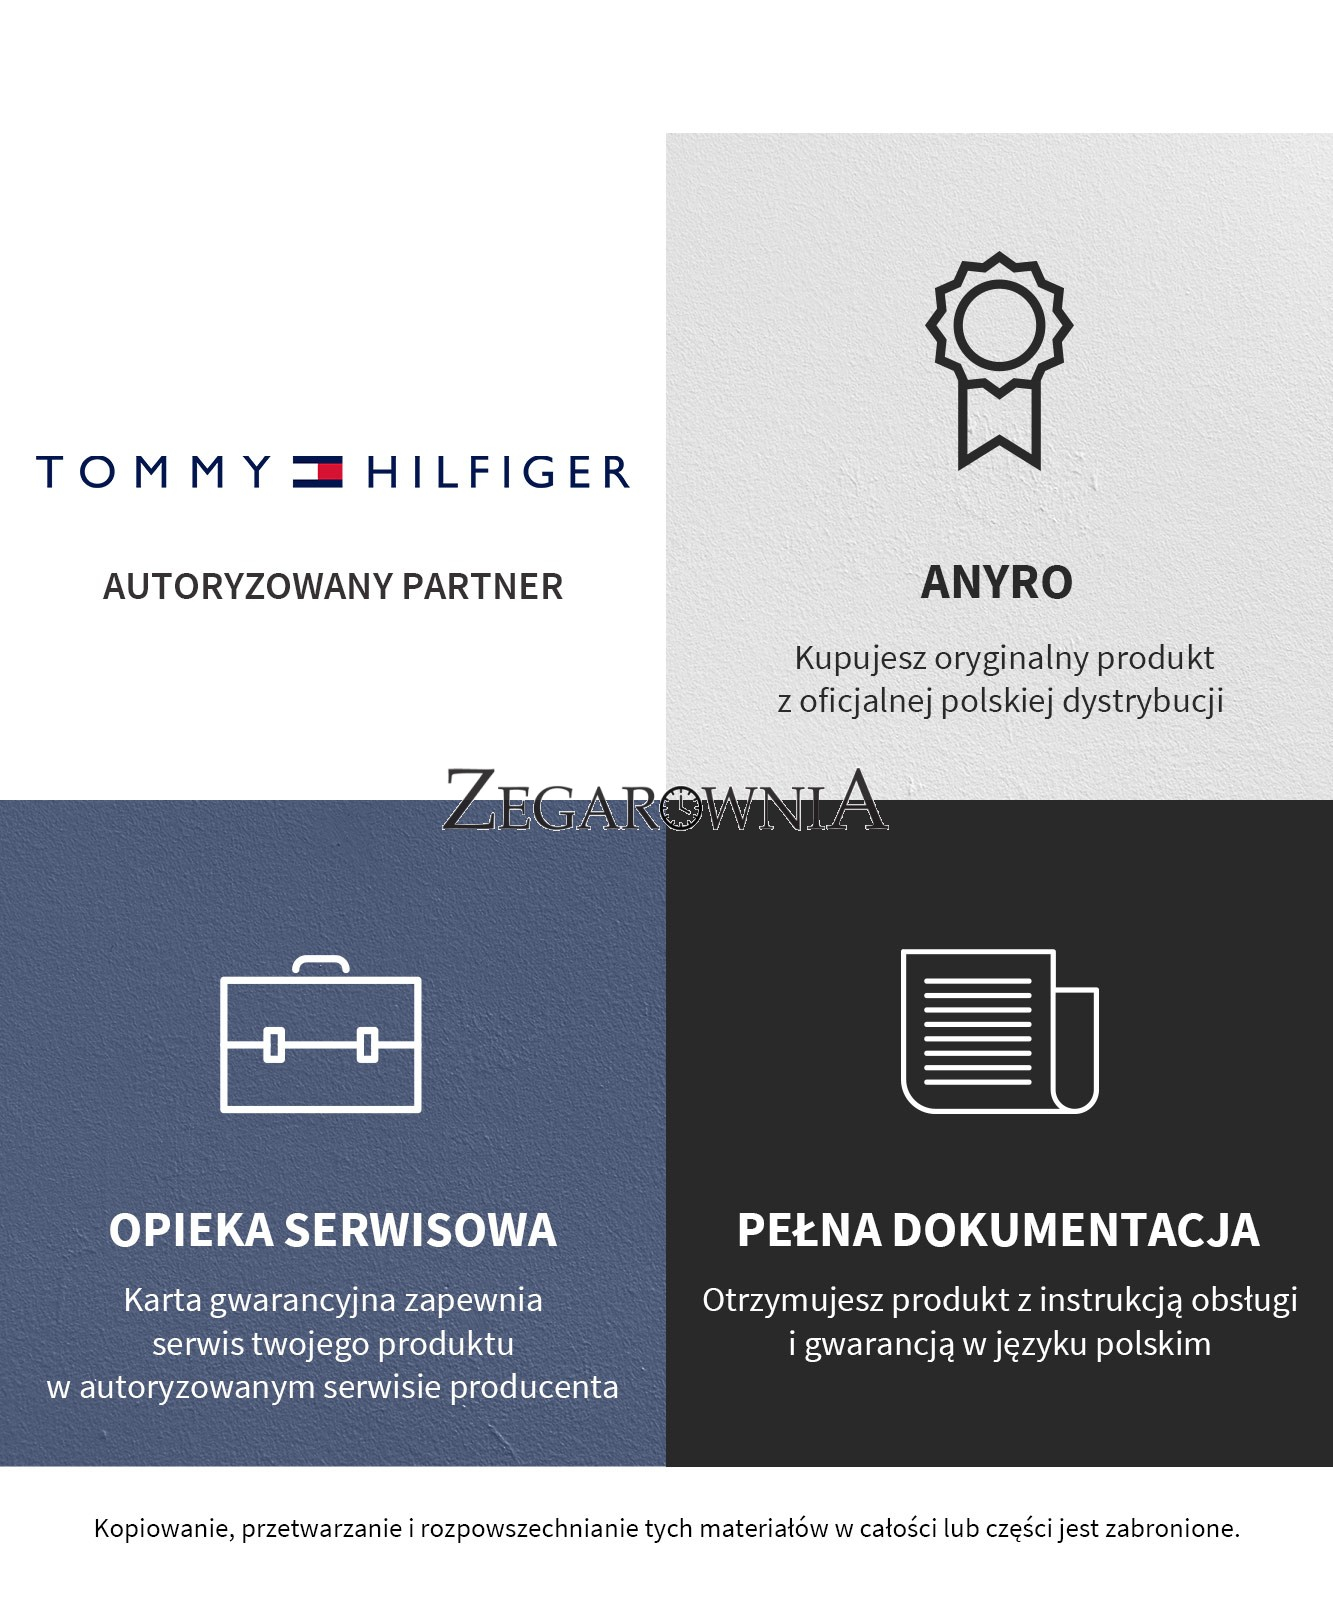 Tommy Hilfiger 1781893 - Zegarek Gigi Campaign • Zegarownia.pl